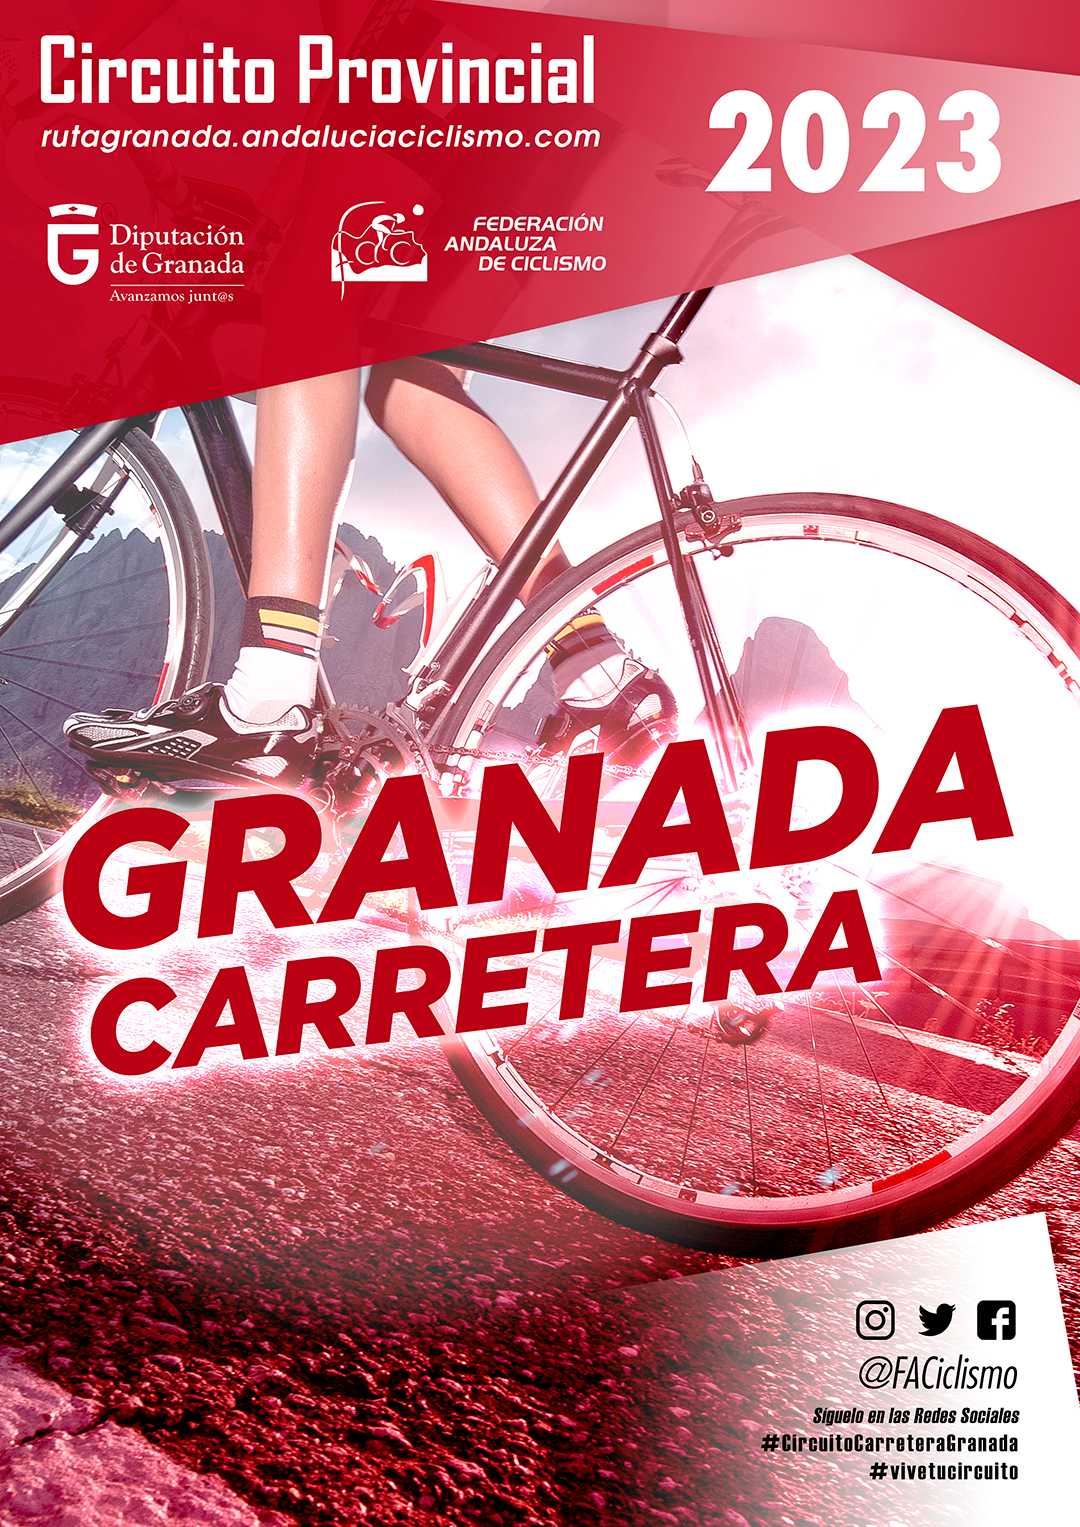 Confirmados los provinciales granadinos de ciclismo en carretera para 2023